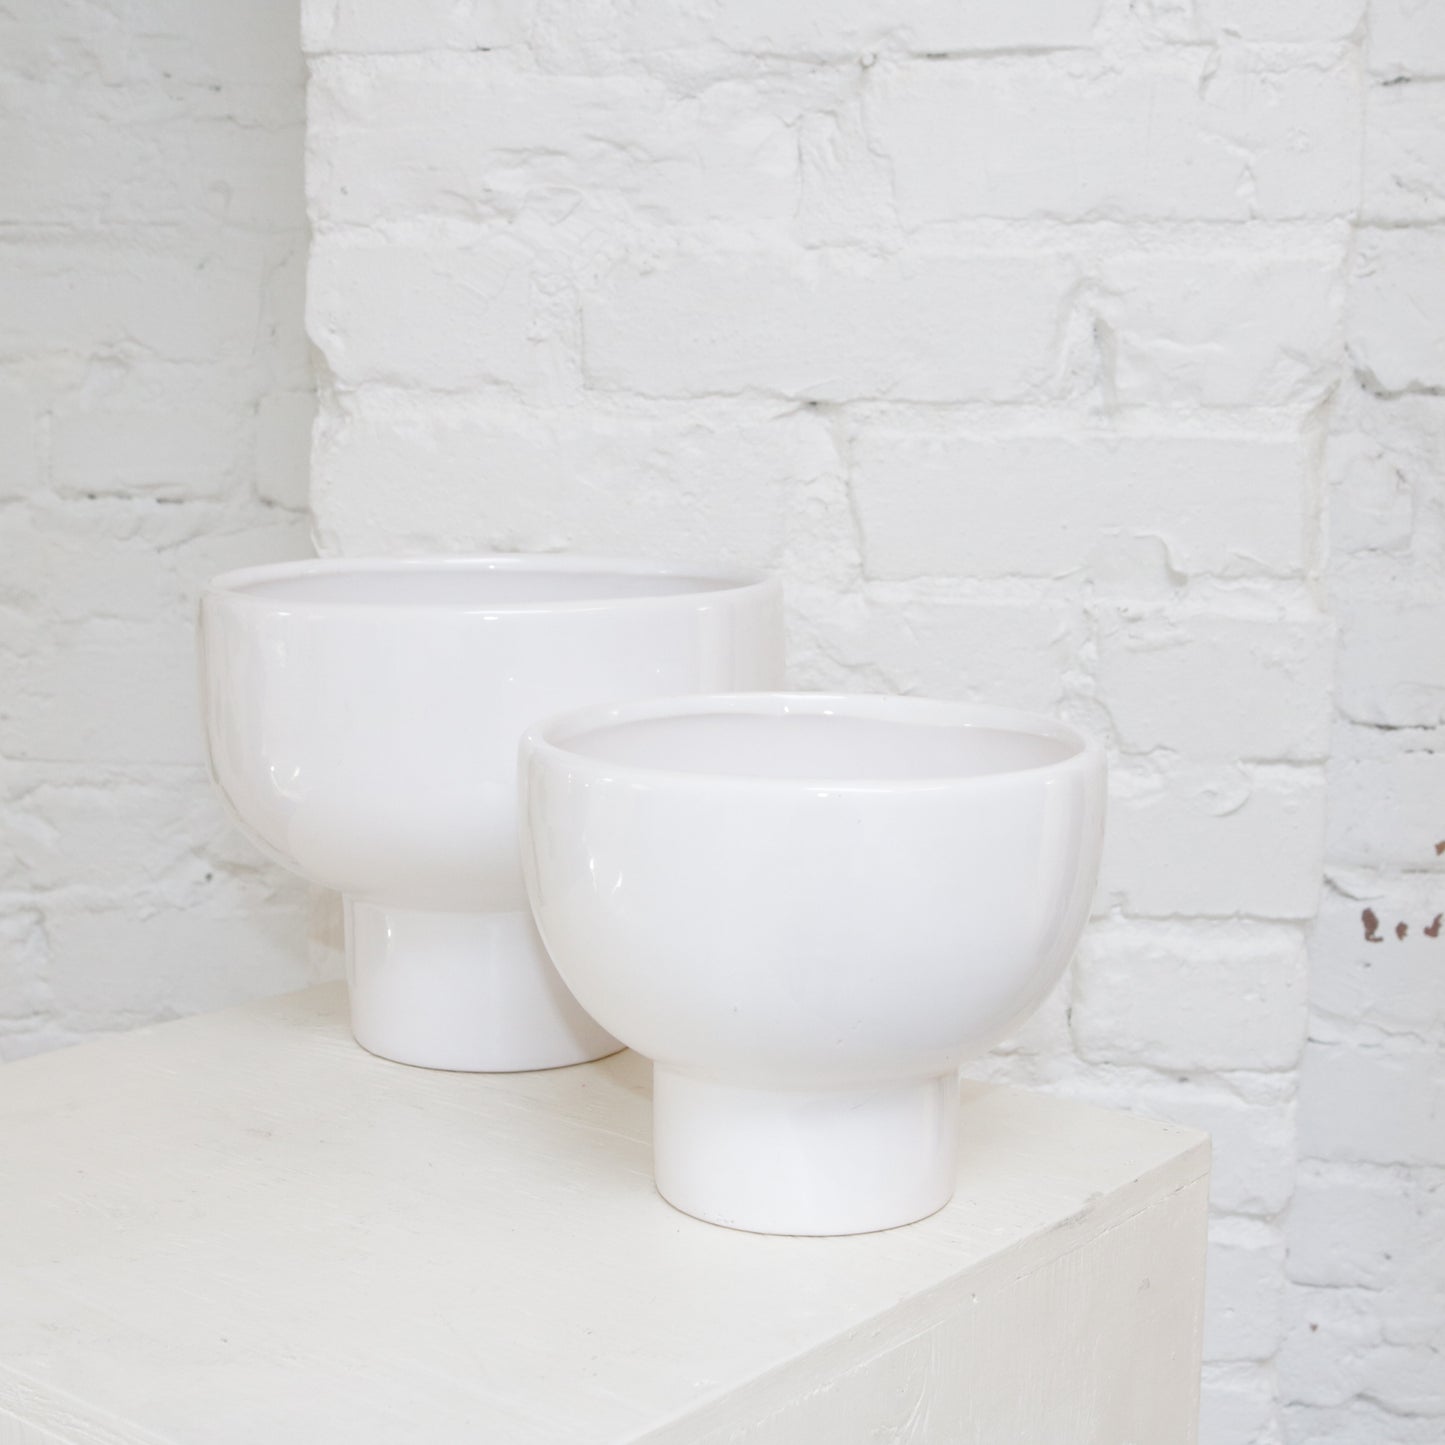 White 8" glazed ceramic vase available at Rook & Rose